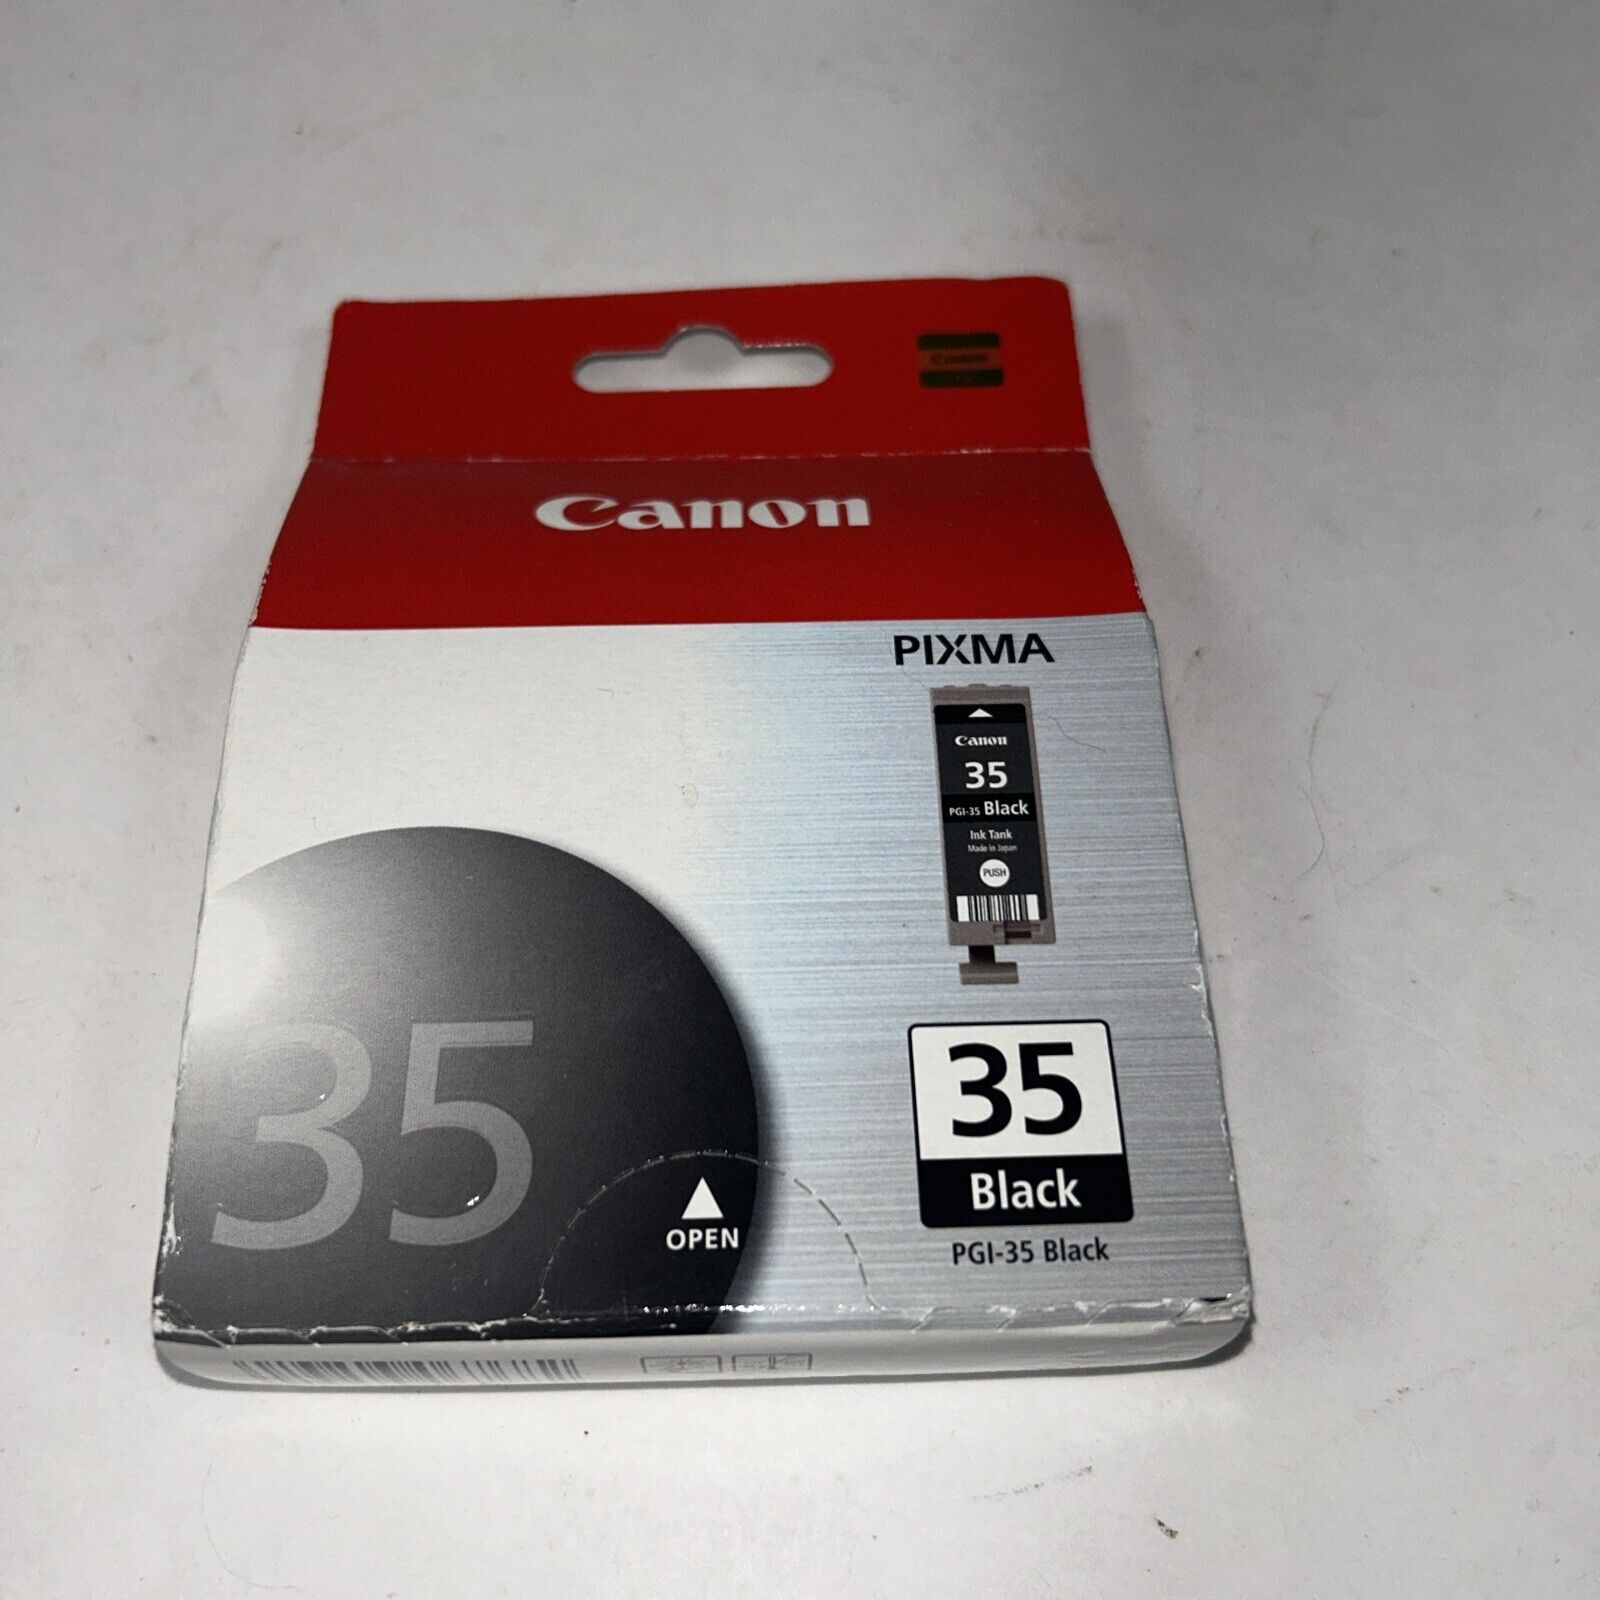 Canon Pixma Black Ink Tank Cartridge - PGI-35